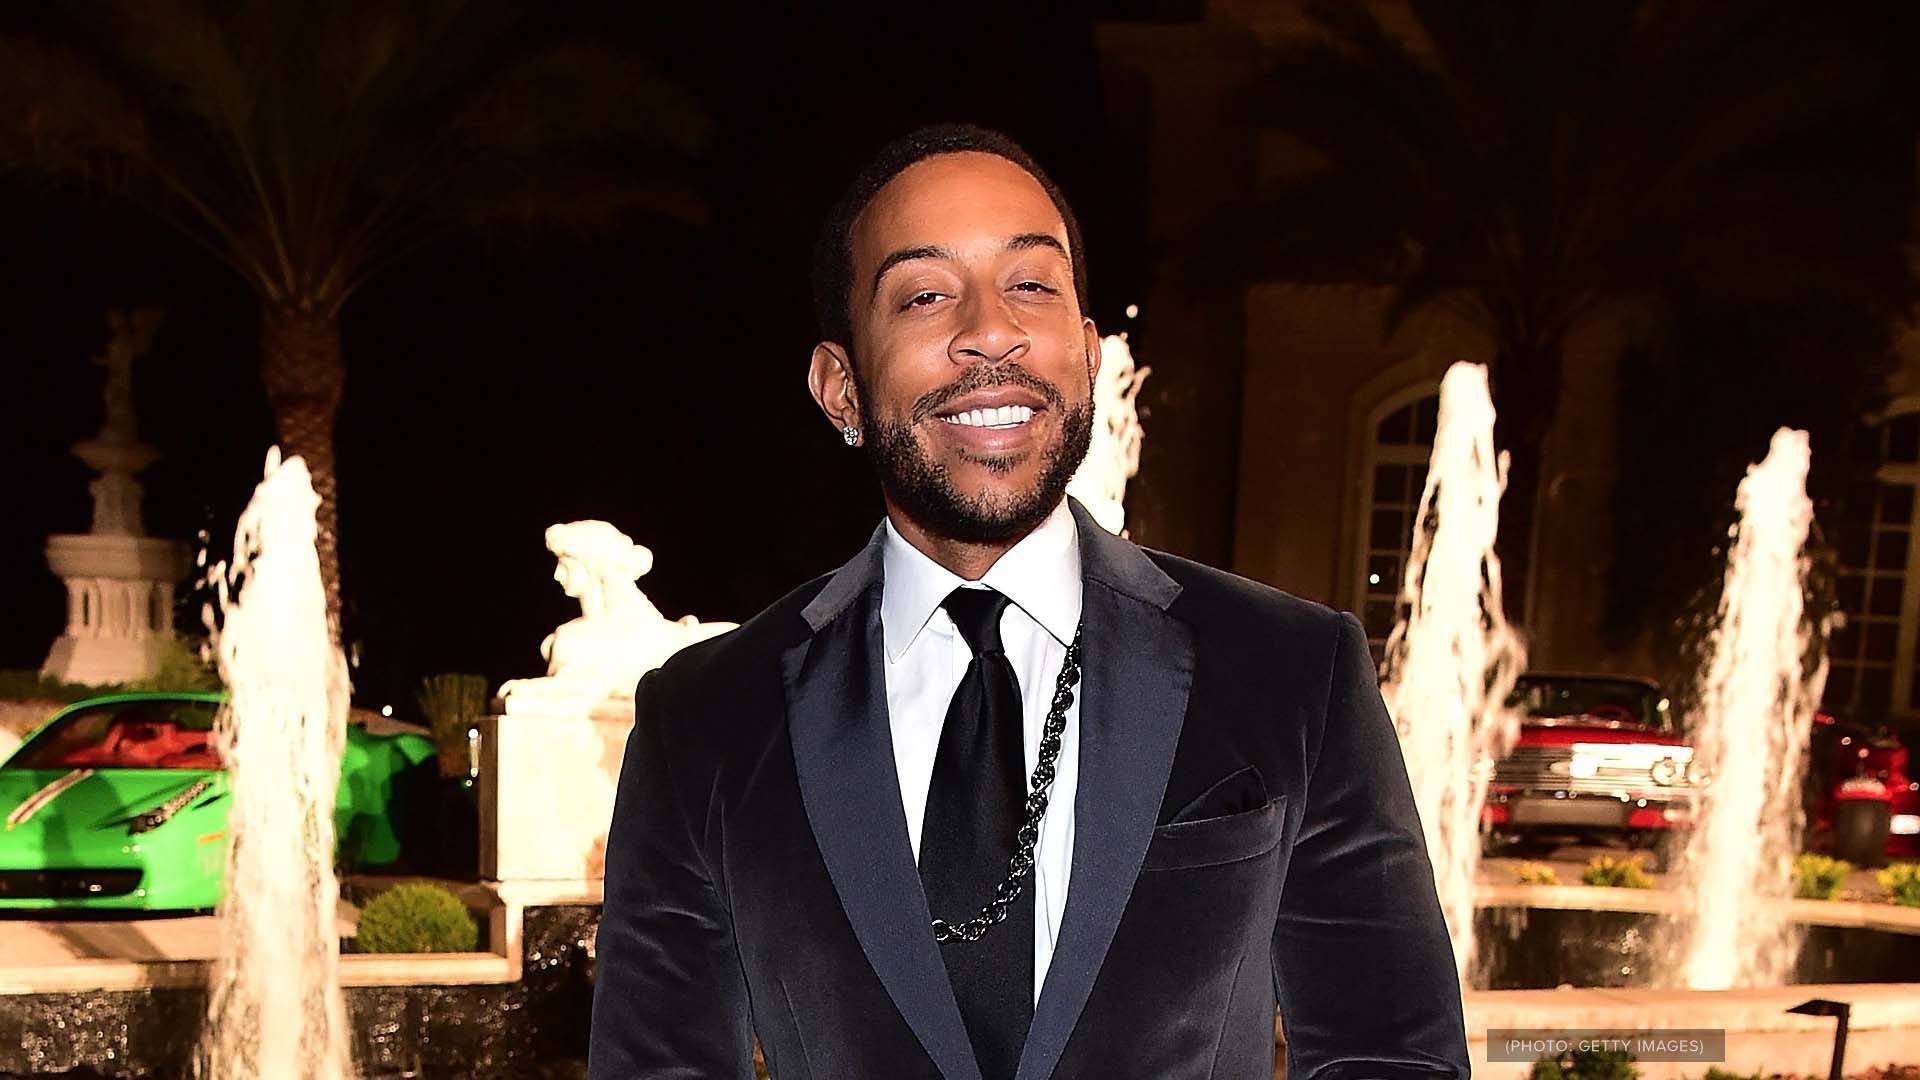 Did Ludacris threaten A fan?